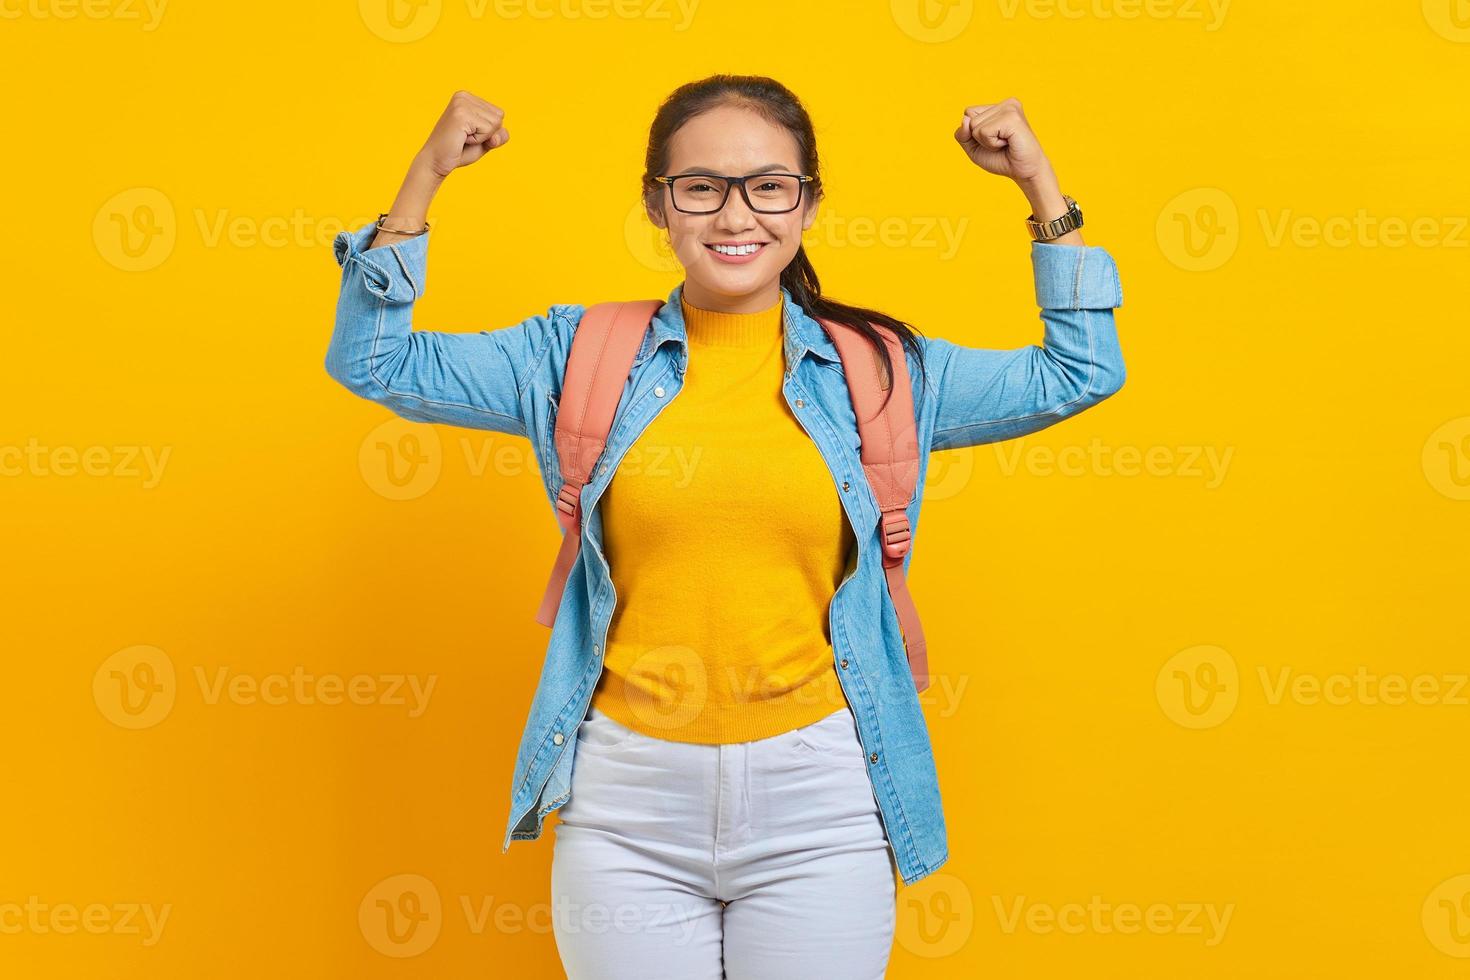 joyeuse jeune étudiante asiatique en tenue denim avec sac à dos lève les bras et montre des biceps isolés sur fond jaune. éducation au concept universitaire photo